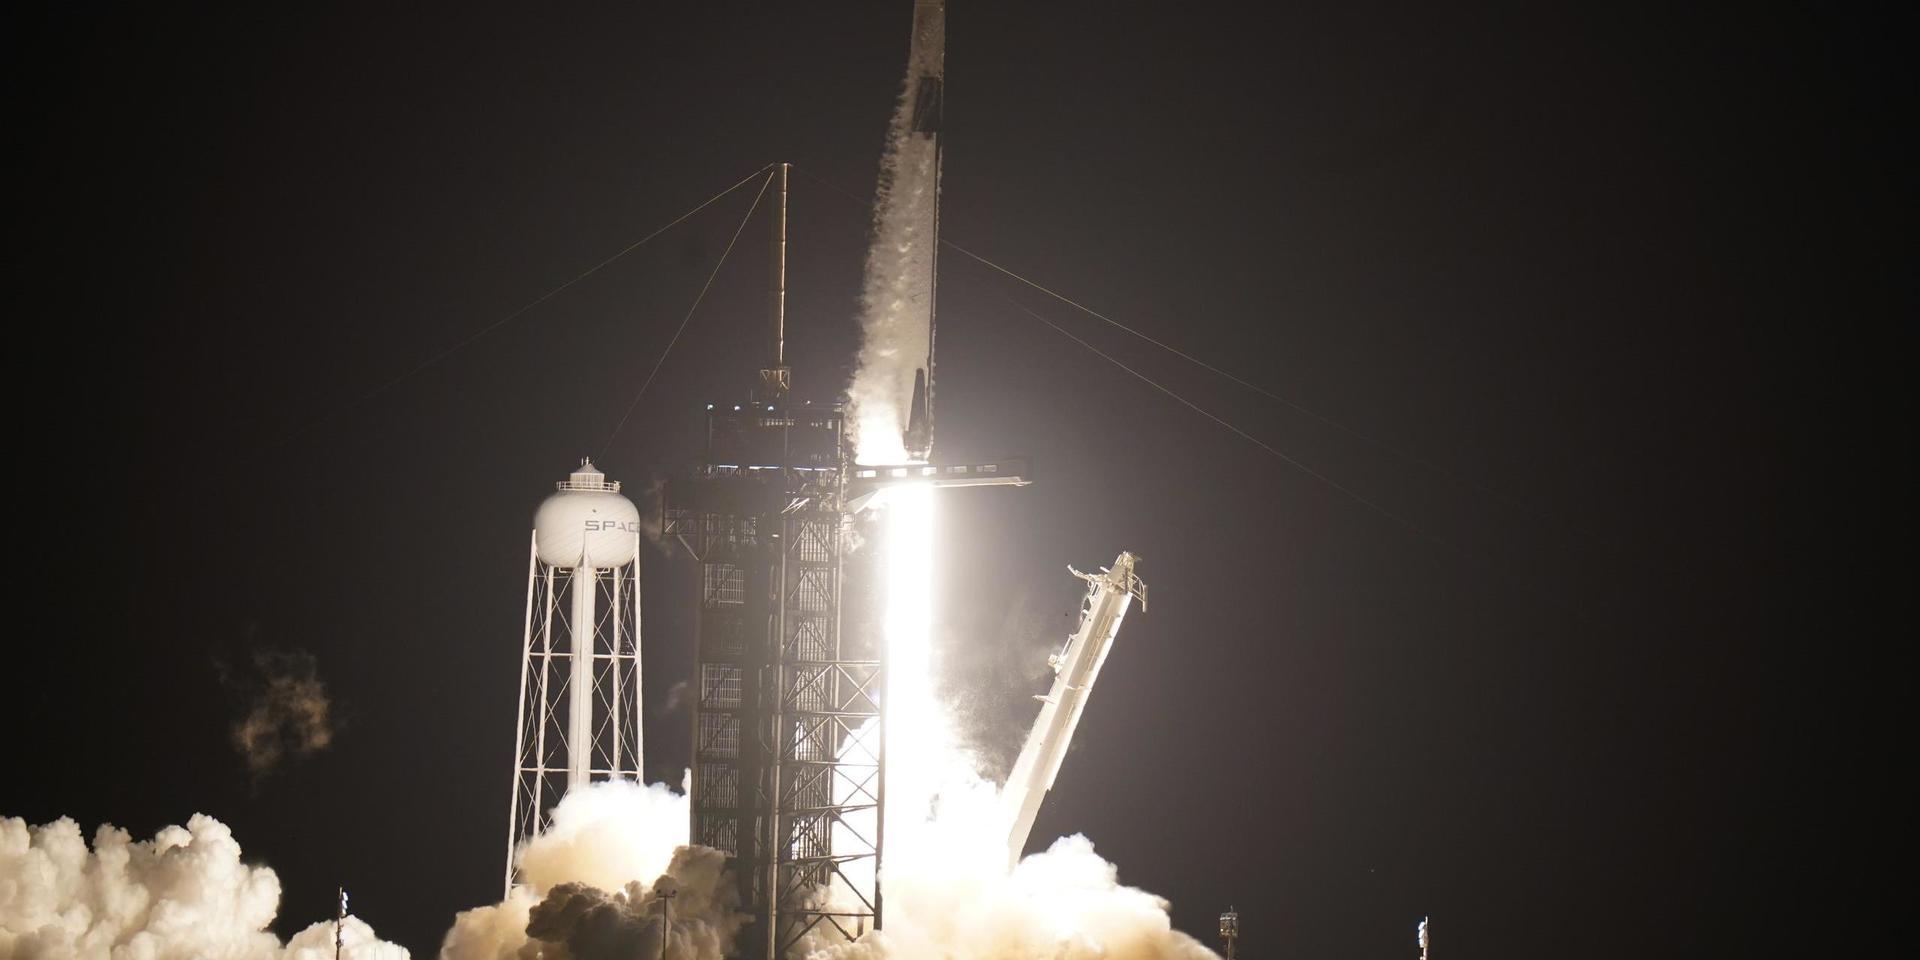 Space X raket Falcon 9 lyfter från Florida med rymdkapseln Dragon, som ska ta fyra astronauter till rymdstationen ISS.